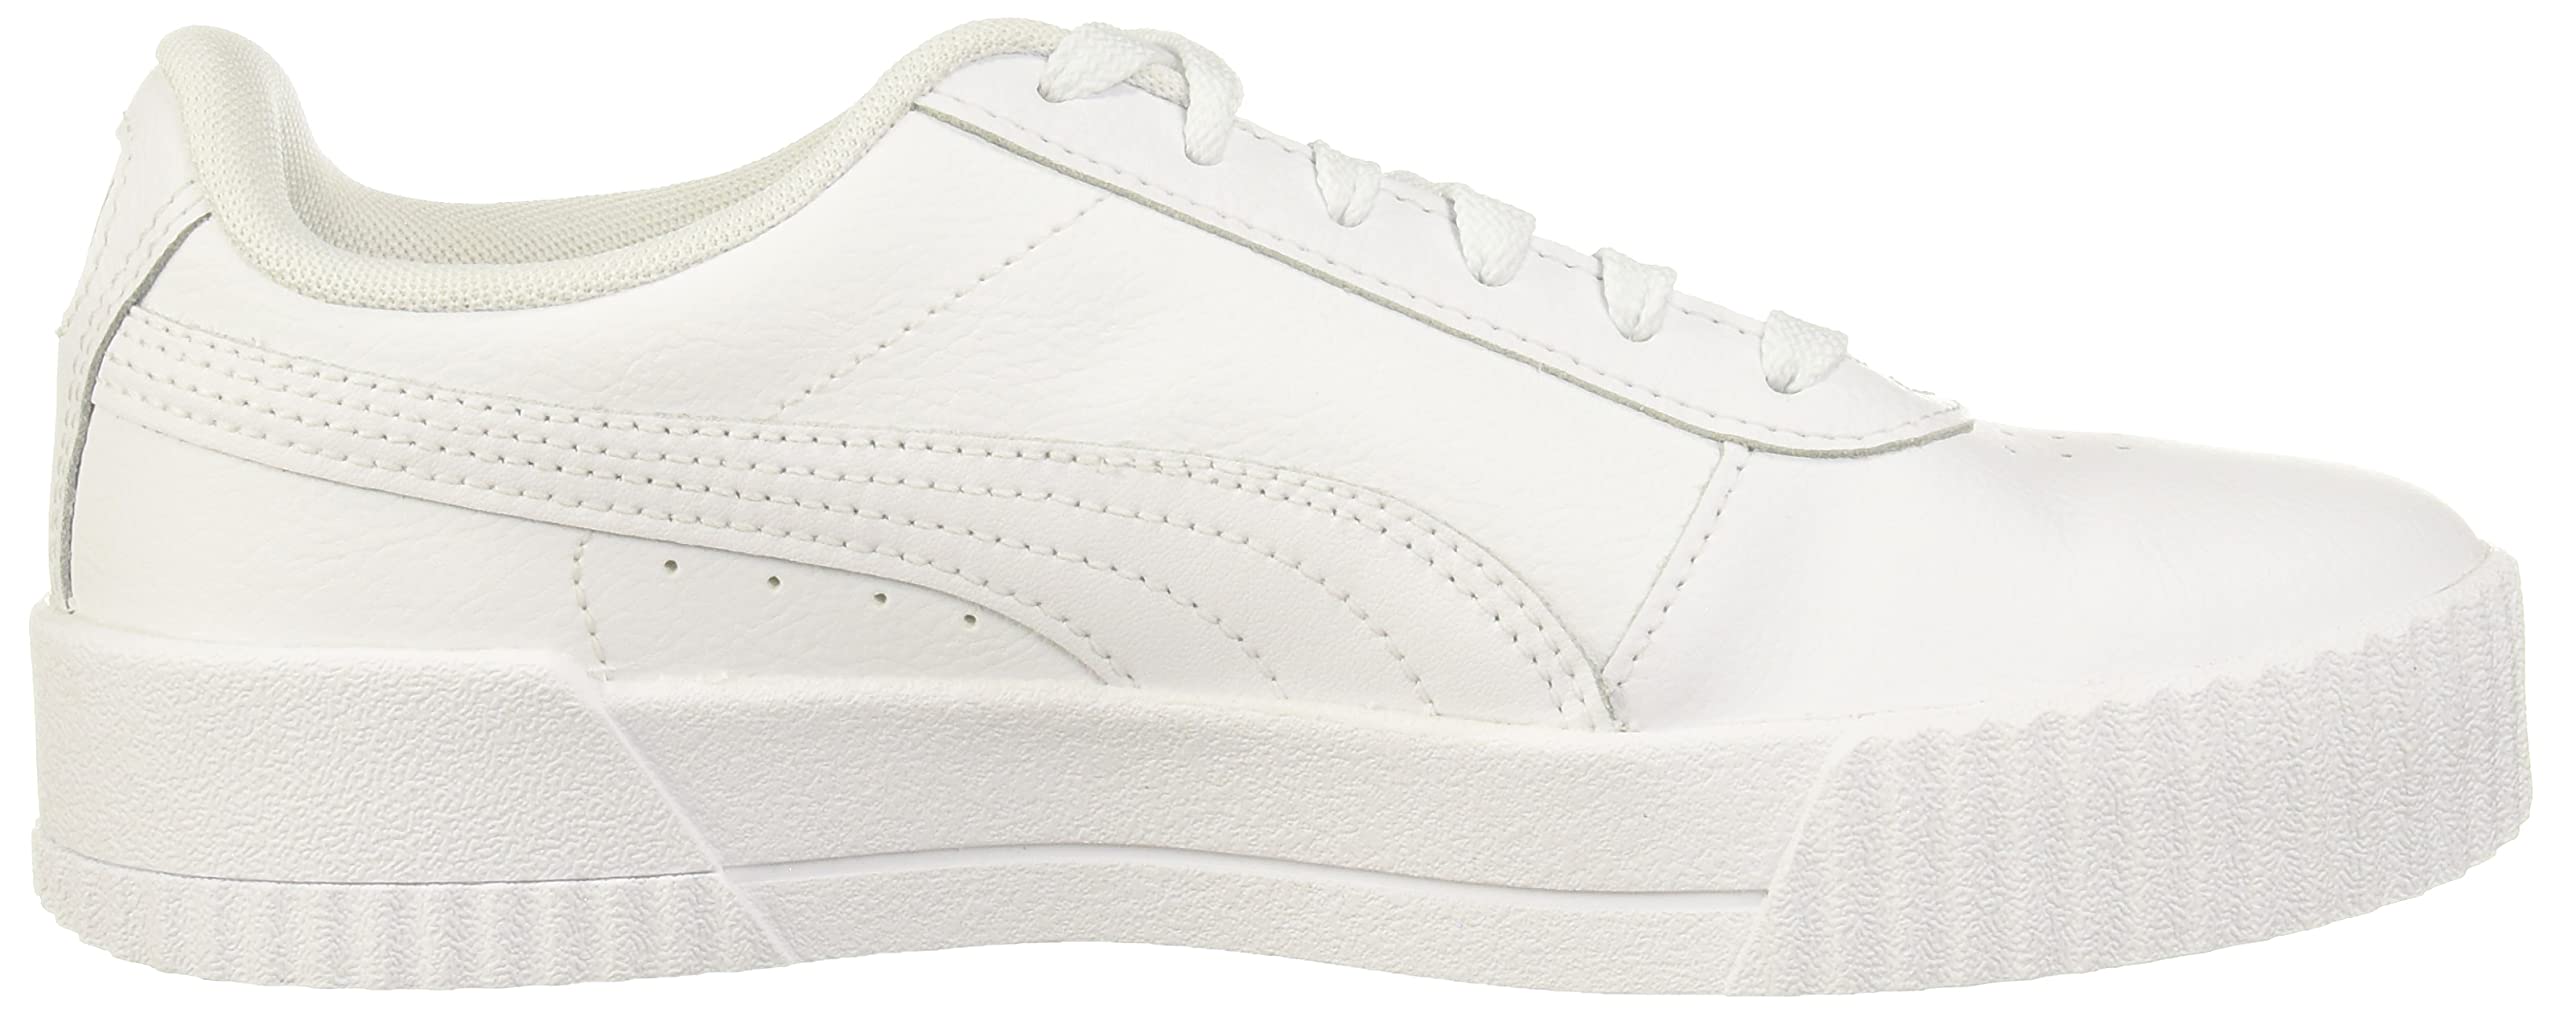 PUMA Women's Carina Sneaker, Puma White-puma White-puma Silver, 8.5 US